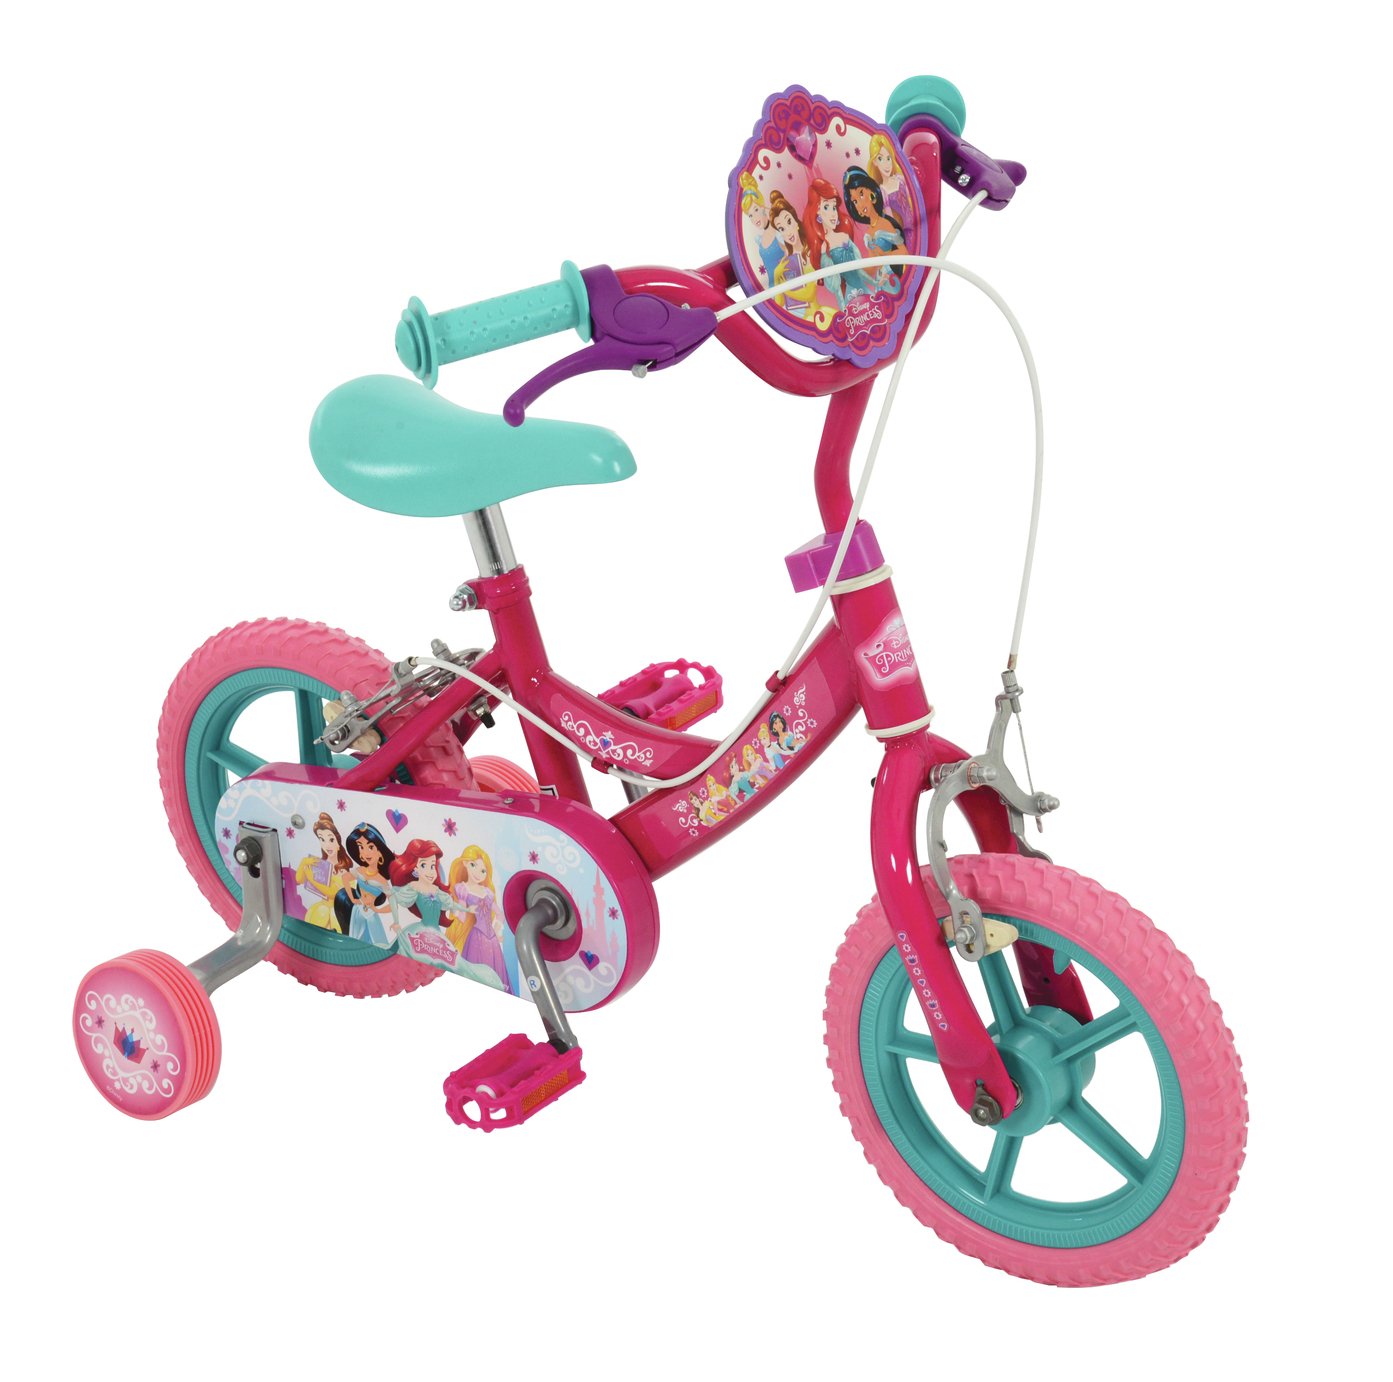 true princess bike